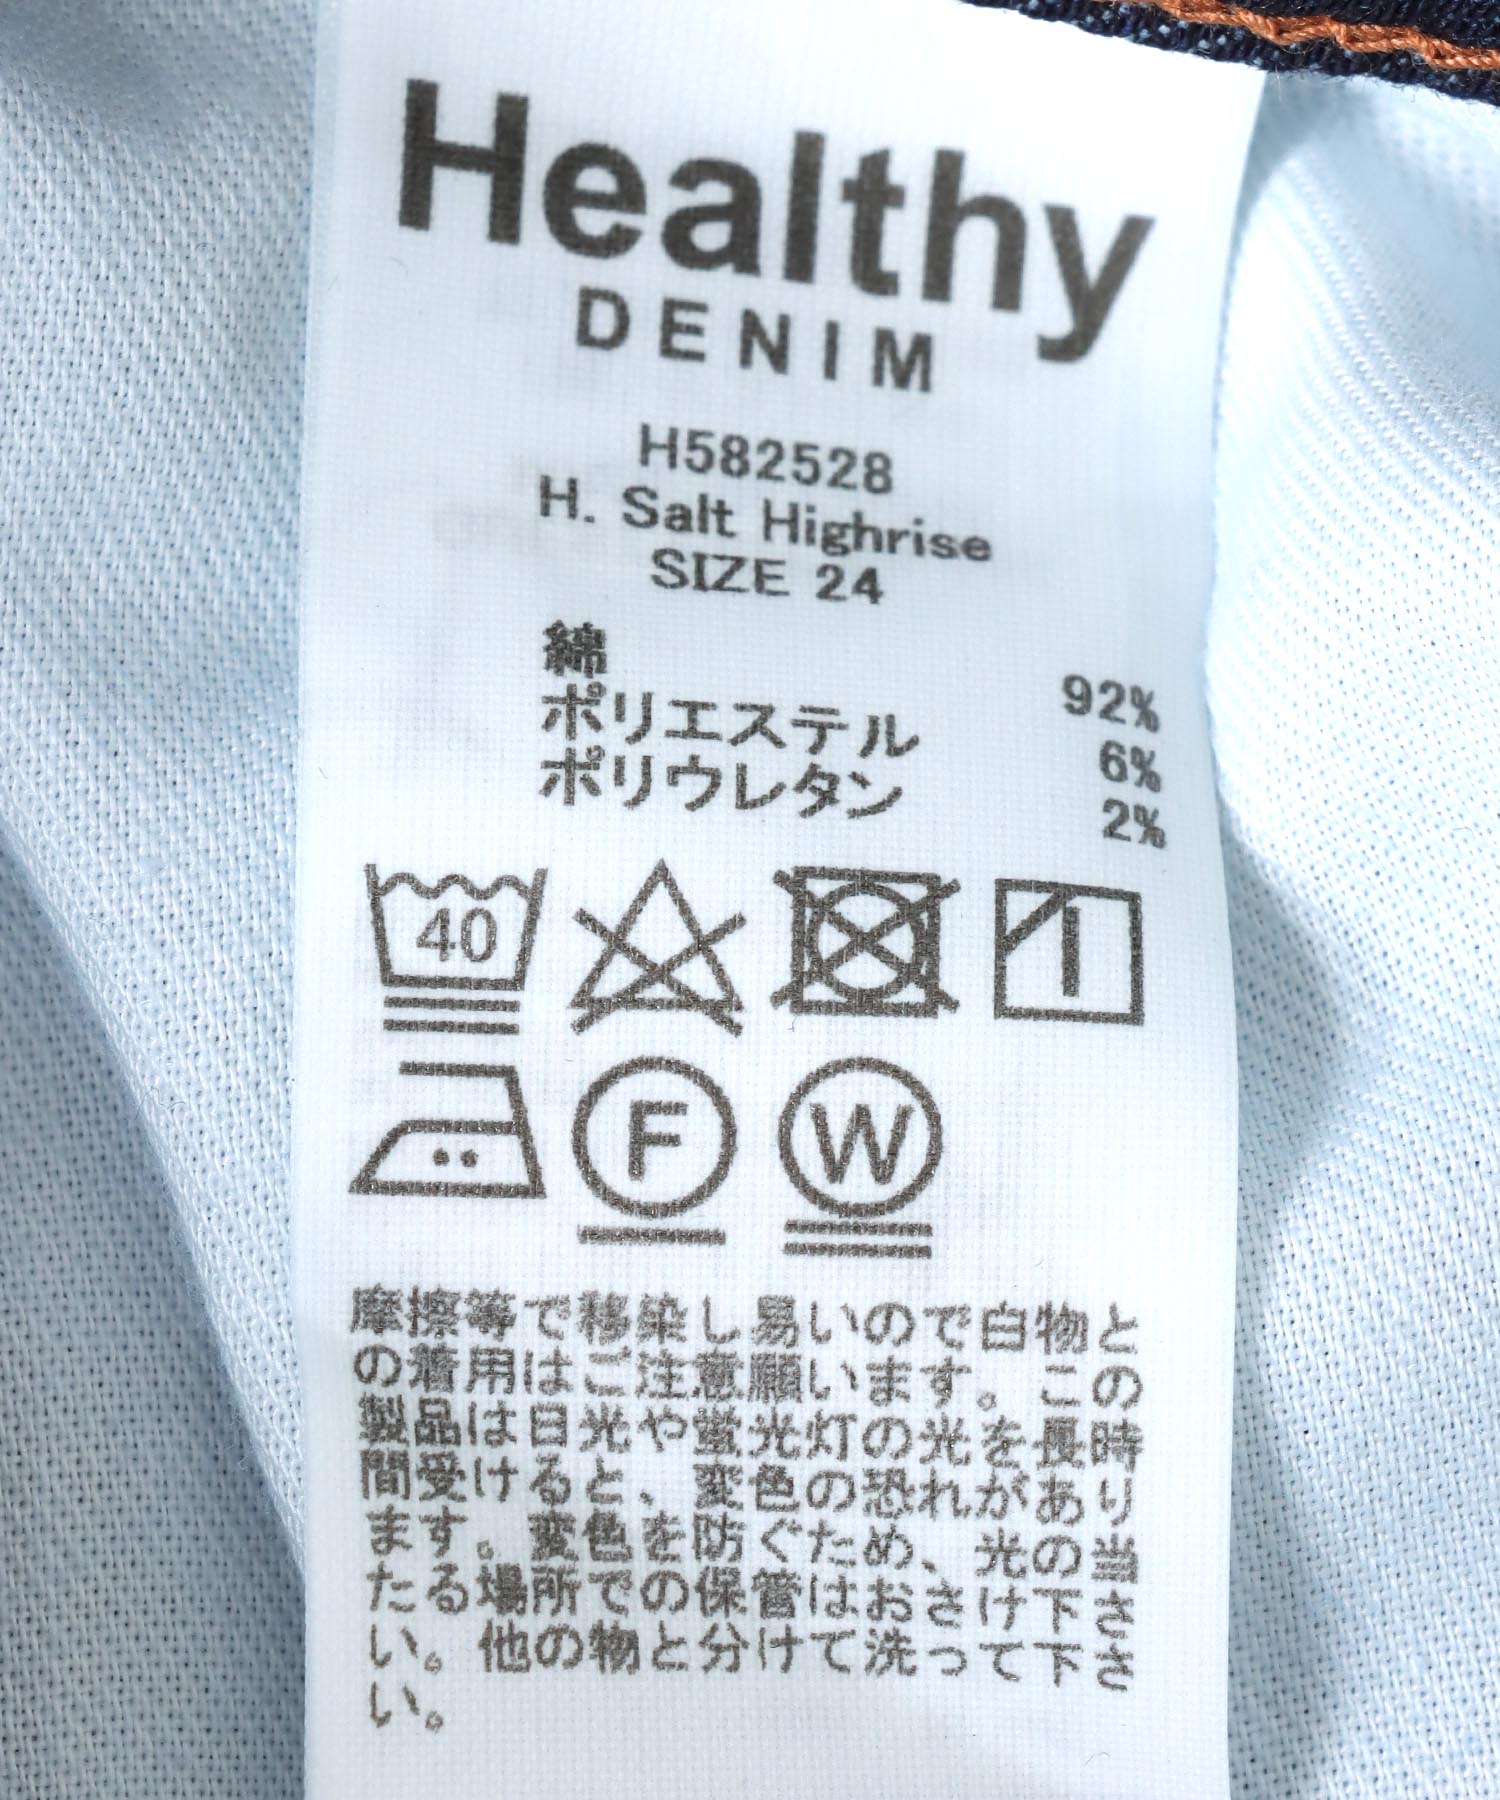 ハイライズテーパードパンツ H.Salt Highrise 【Healthy Denim